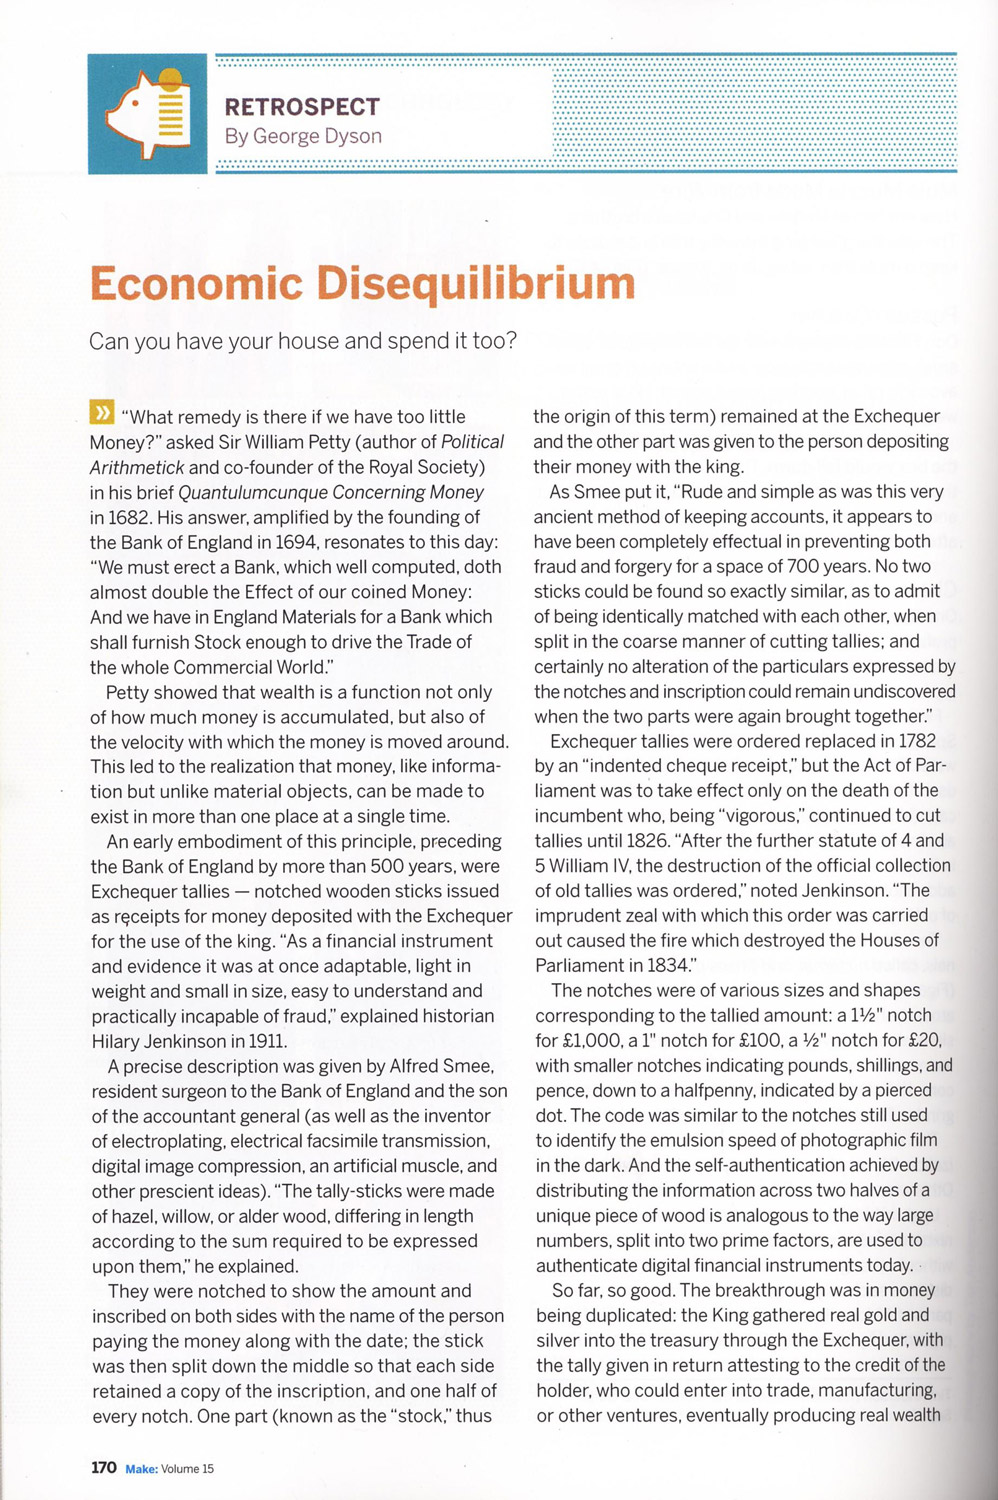 Make Magazine: Economic Disequilibrium